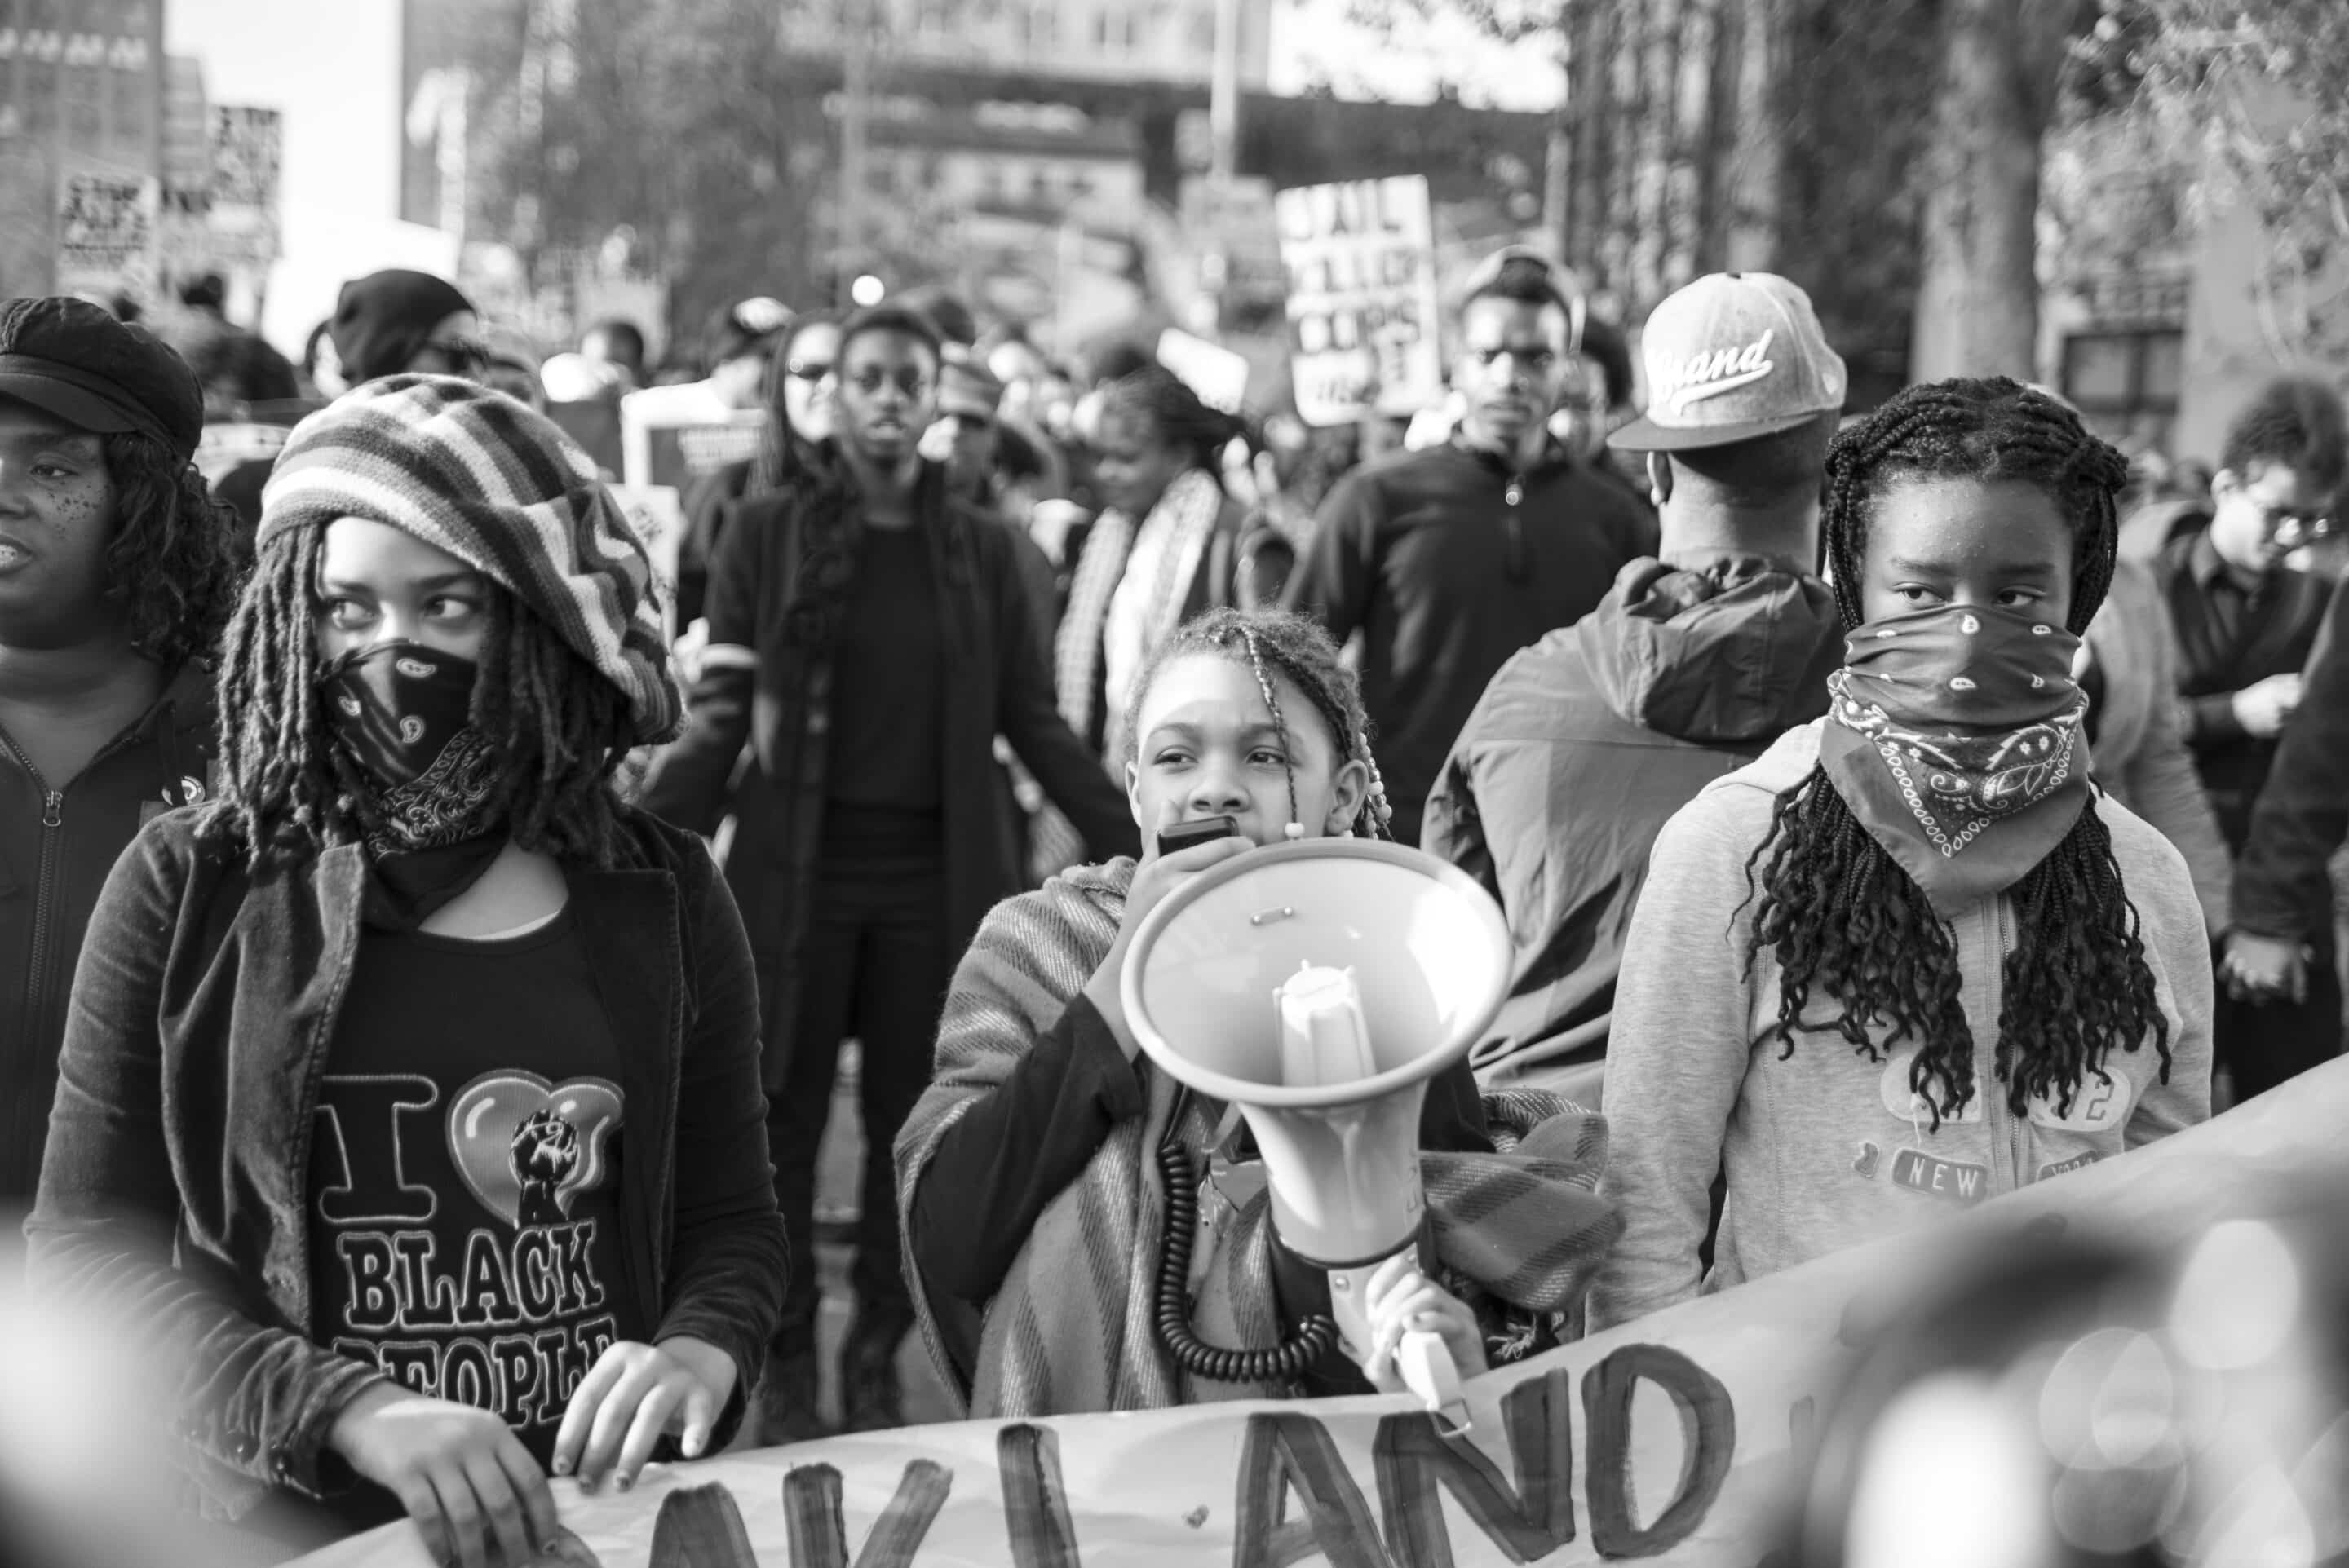 Manifestation Black Lives Matter à Oakland, en 2014.
(c) wikipédia